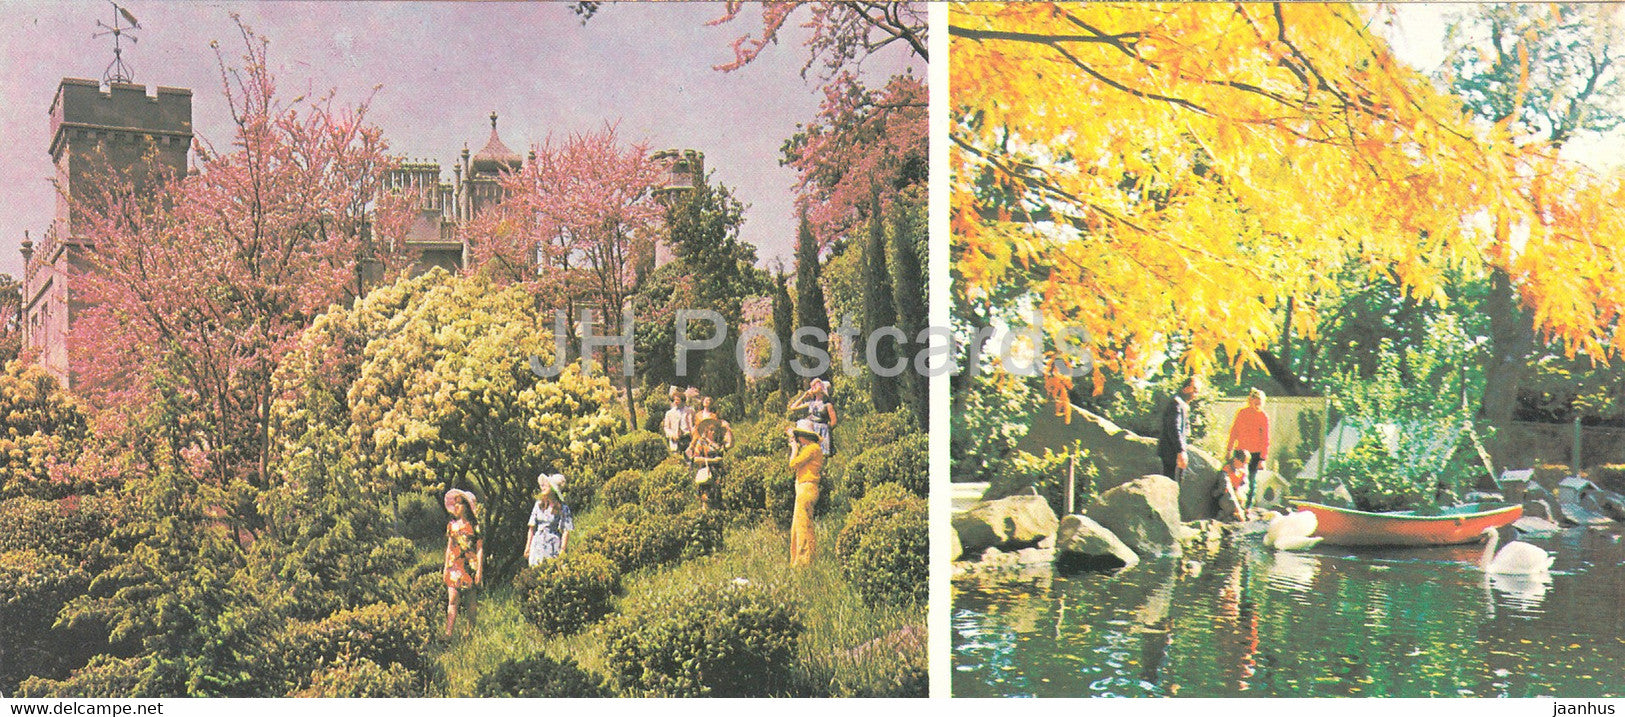 The Grounds of the Alupka Palace Museum - Crimea - 1979 - Ukraine USSR - unused - JH Postcards